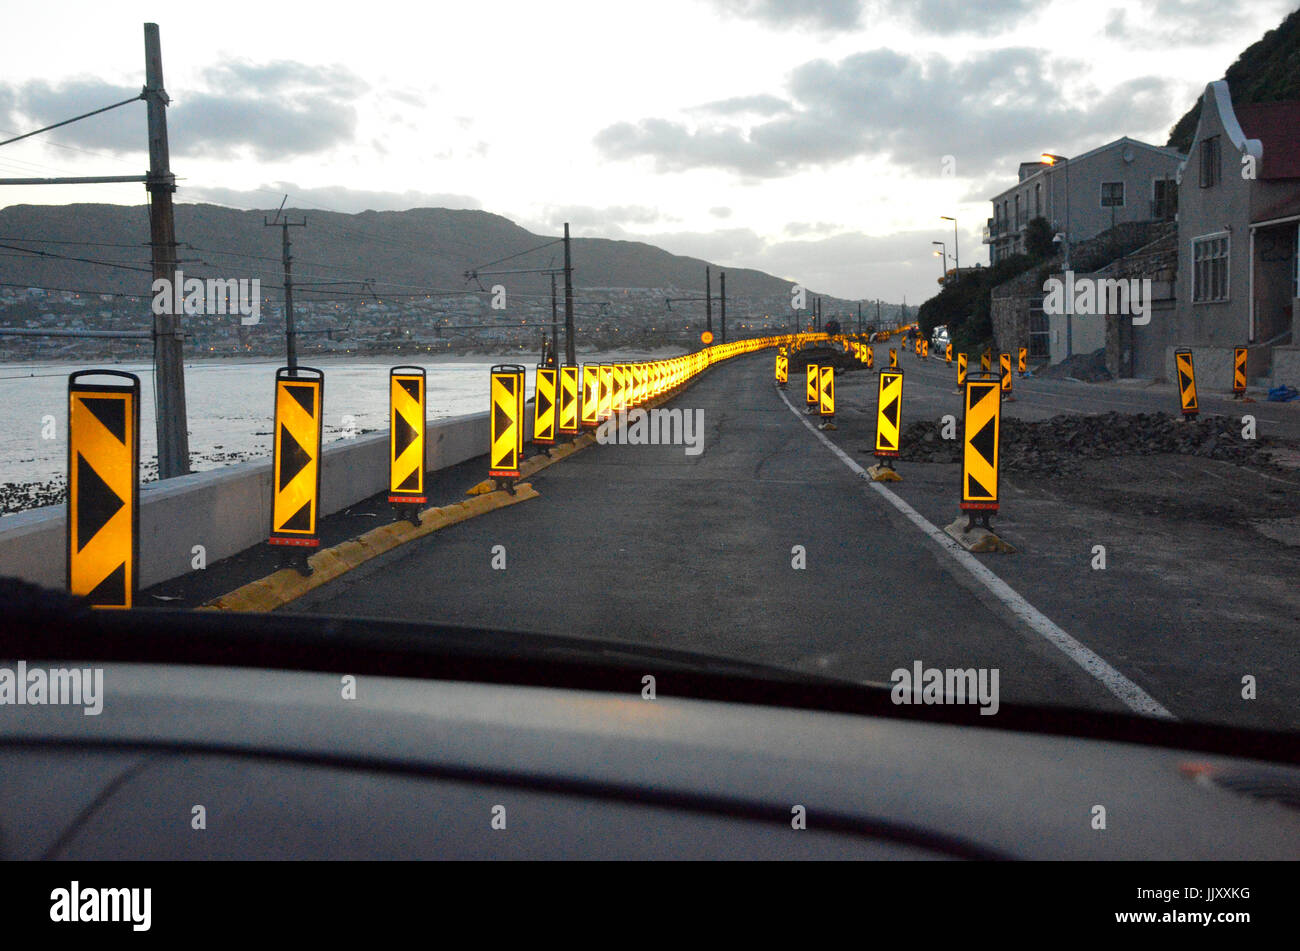 Reflective road warning signs Stock Photo